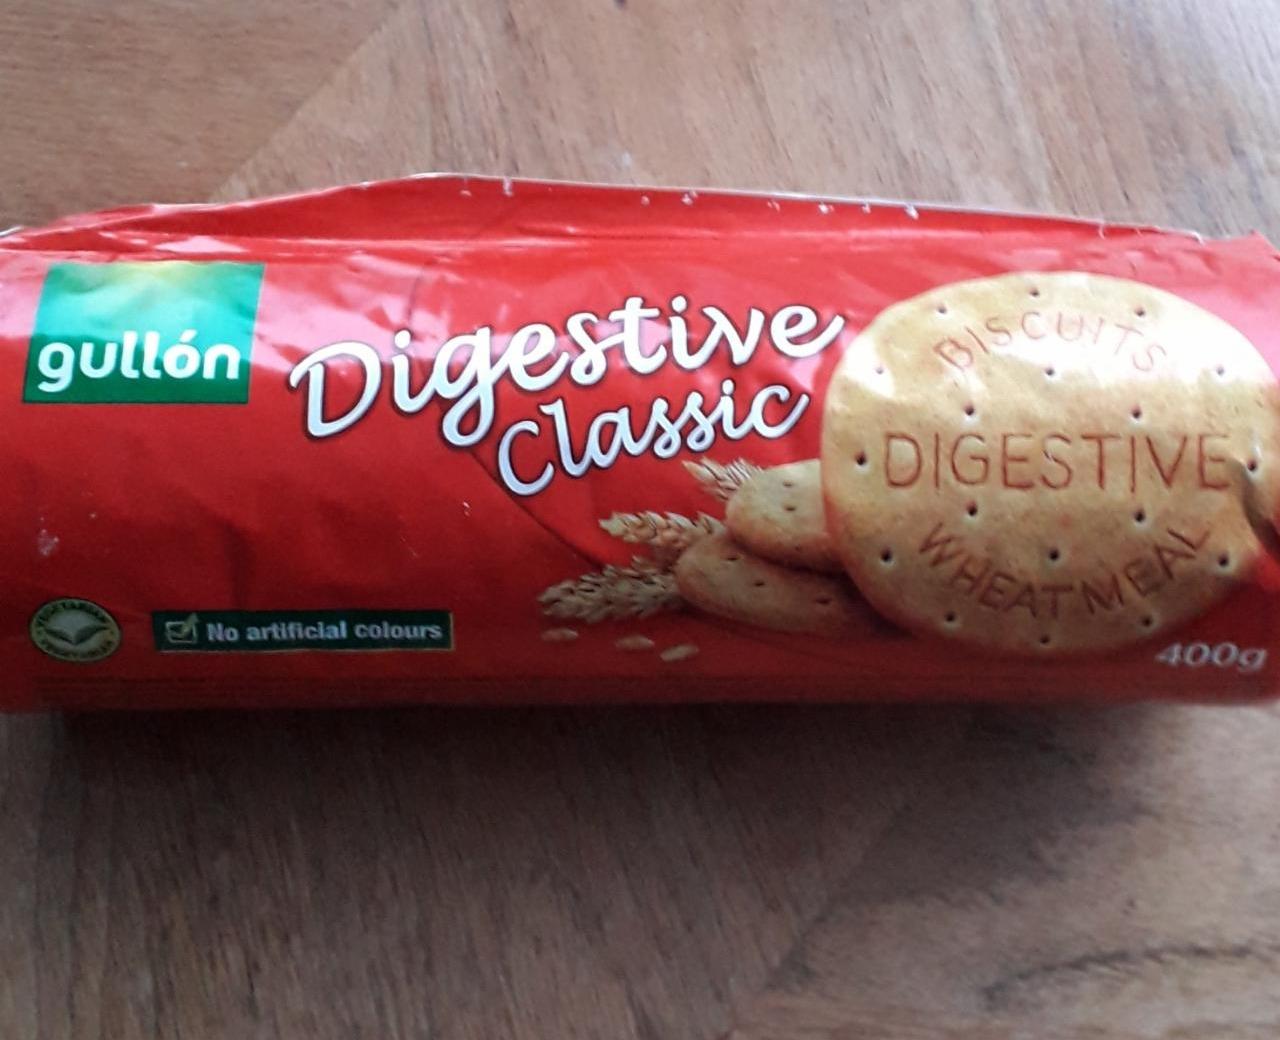 Fotografie - Digestive classic biscuits wheatmeal Gullón